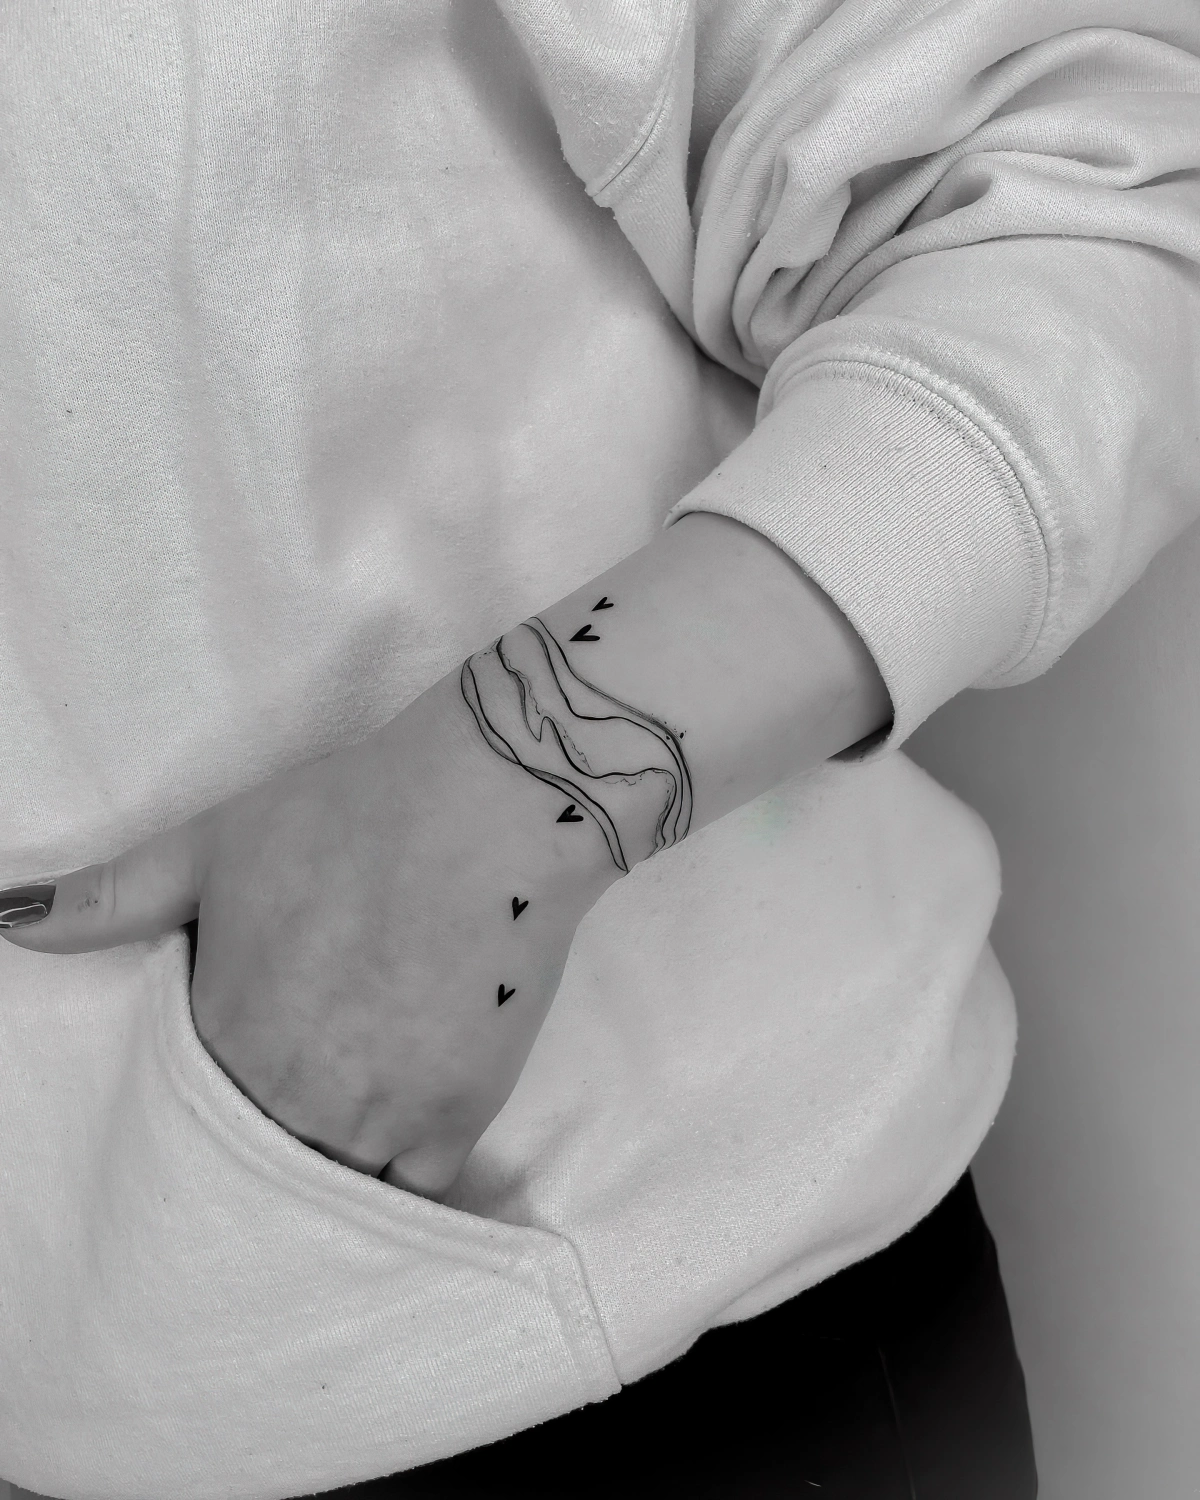 sweatshirt femme blanc pantalon noir legging tatouage coeur poignet lignes courbes